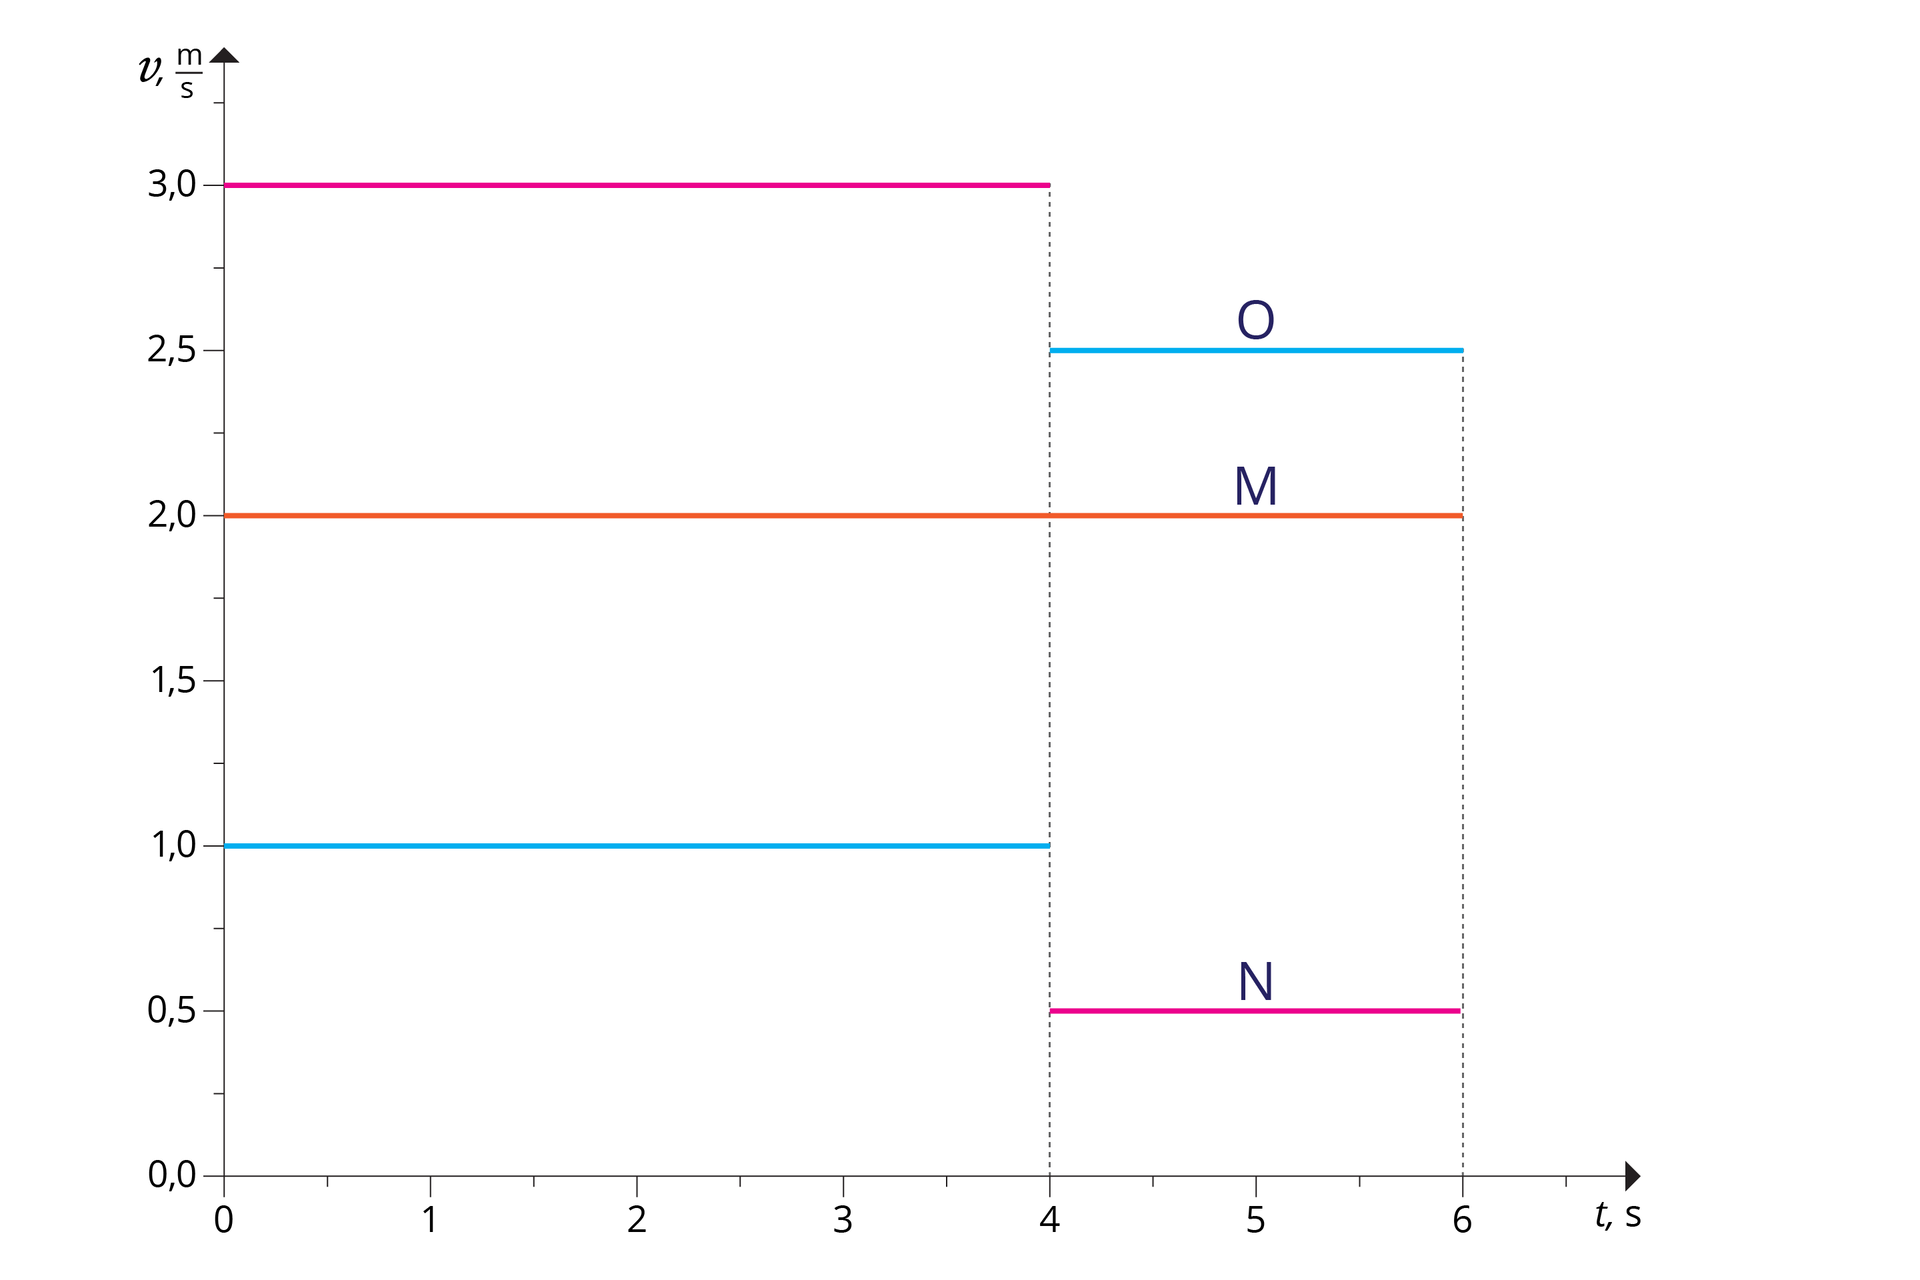 Ilustracja przedstawia wykres zależności prędkości od czasu dla trzech ciał: O, M, N. O – kolor niebieski. M – kolor pomarańczowy. N – kolor różowy. Oś odcięty od 0 do 6, co 1, opisana „t, s”. Oś rzędnych od 0,0 do 3,0, co 0,5; opisana „v, m/s”. Wykres dla ciała O składa się z dwóch odcinków. Pierwszy: początek (0; 1) i koniec (4; 1,0). Drugi: początek (4; 2,5) i koniec 6; 2,5). Wykres dla ciała M składa się z jednego odcinka. Początek (0; 2,0) i koniec (6; 2,0). Wykres dla ciała N składa się z dwóch odcinków. Pierwszy: początek (0; 3,0) i koniec (4; 3,0). Drugi: początek (4; 0,5) i koniec 6; 0,5).